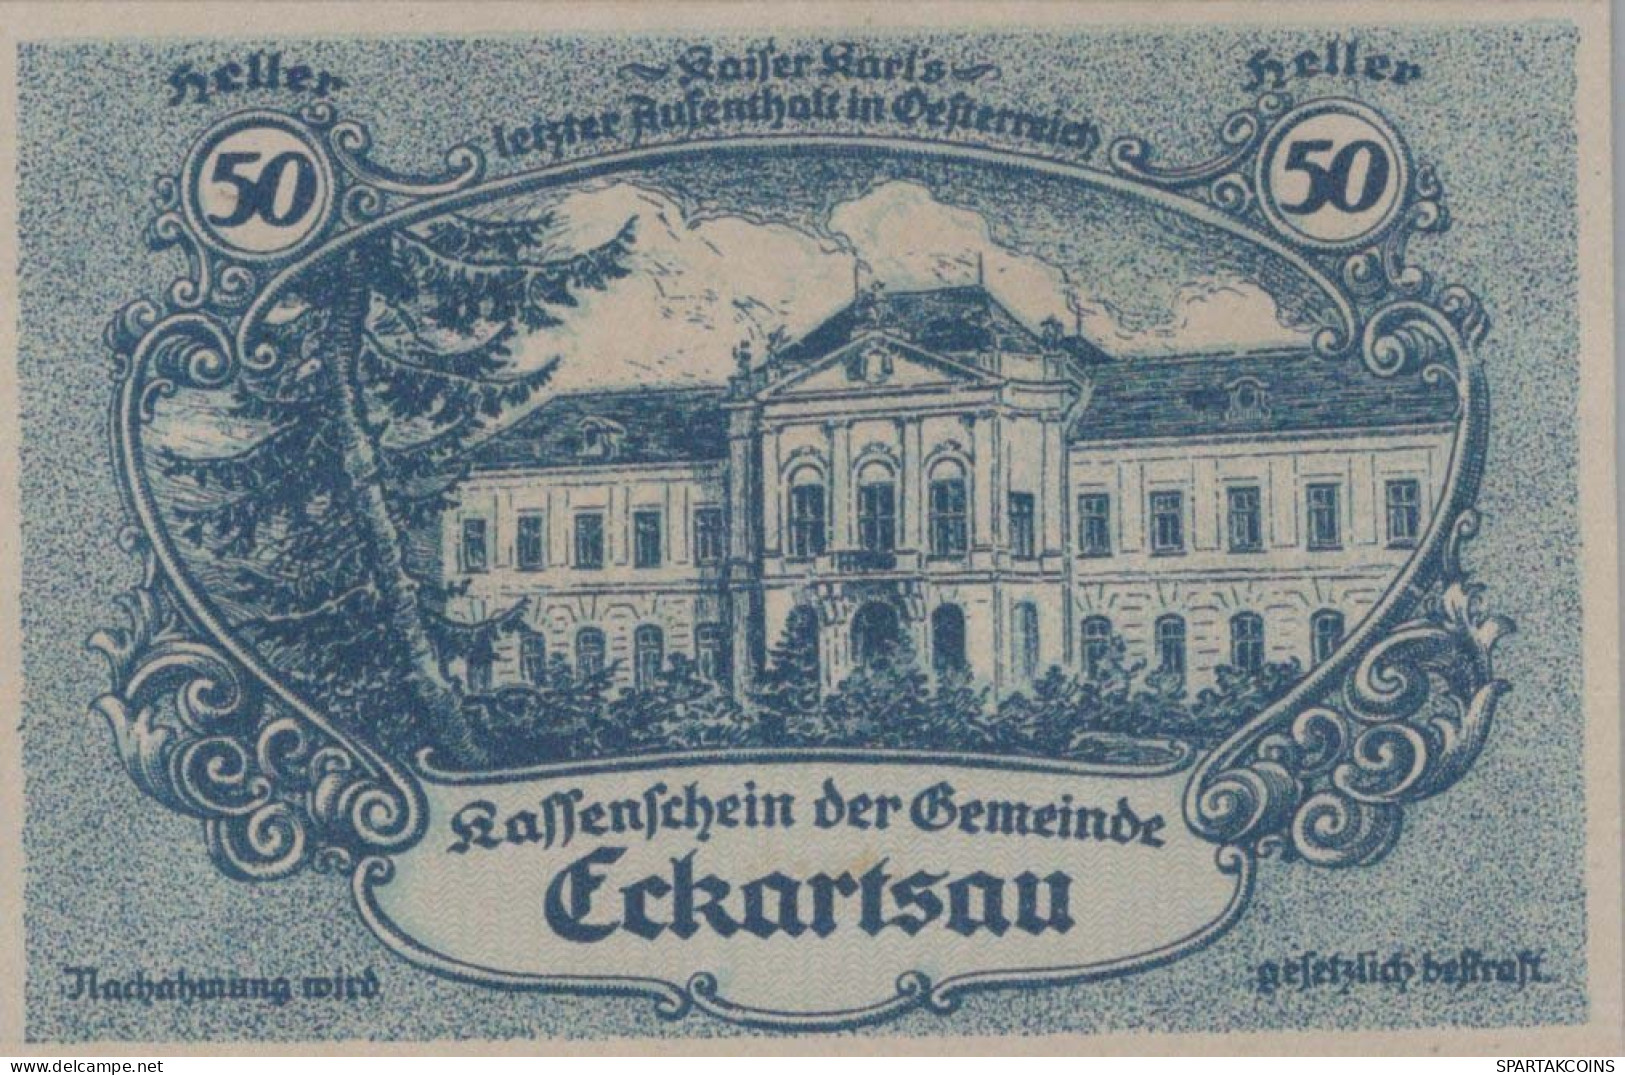 50 HELLER 1920 Stadt ECKARTSAU Niedrigeren Österreich Notgeld Papiergeld Banknote #PG825 - [11] Local Banknote Issues